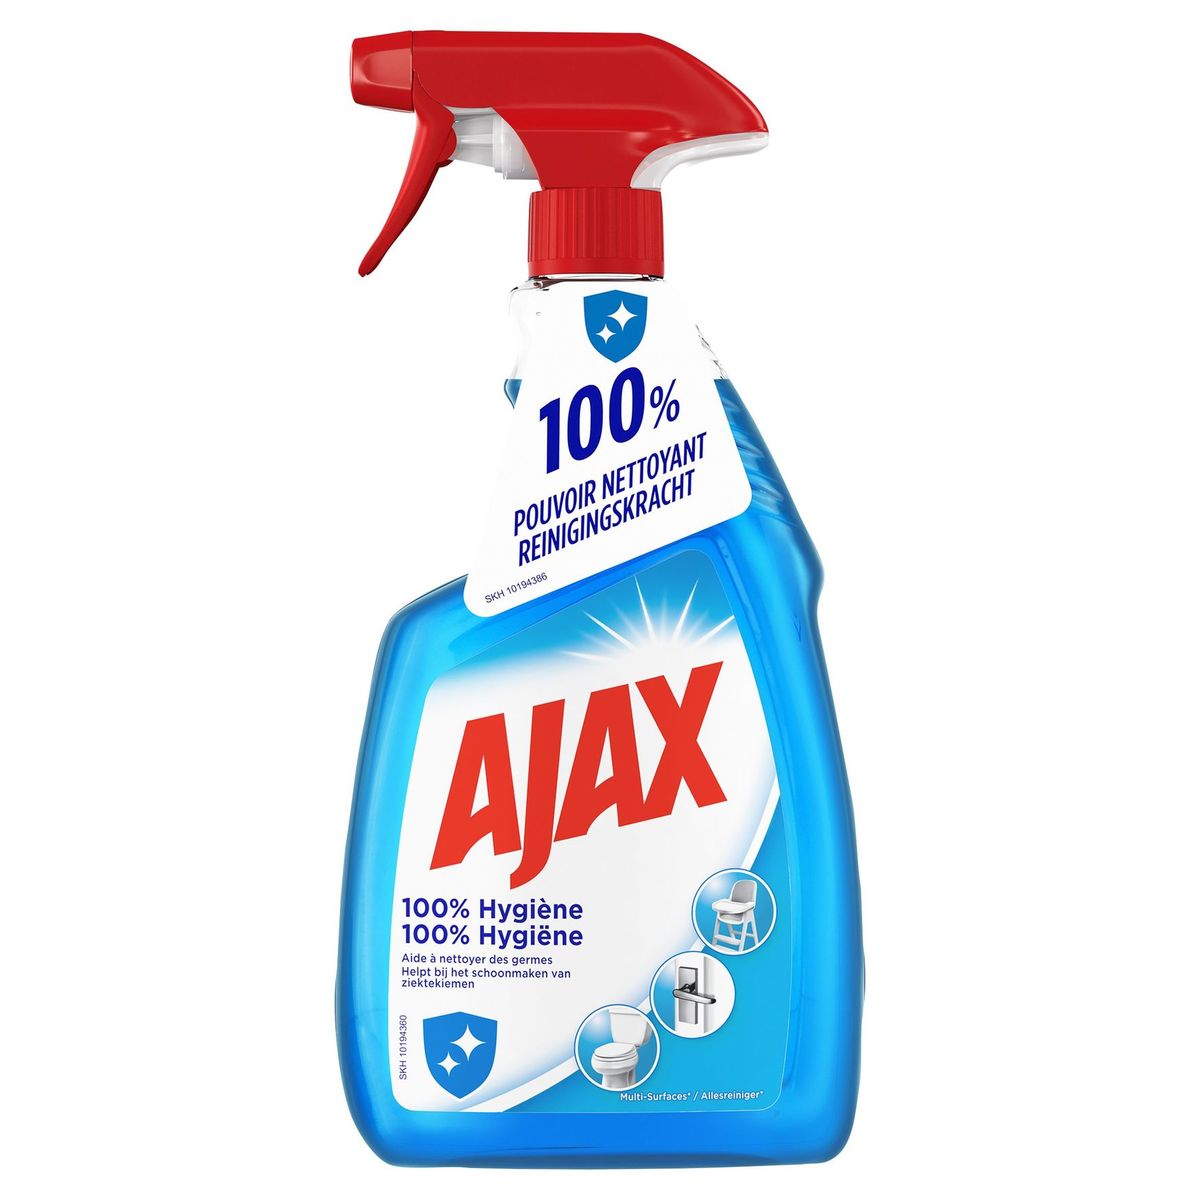 AJAX Spray 100% Hygiëne 750 mL